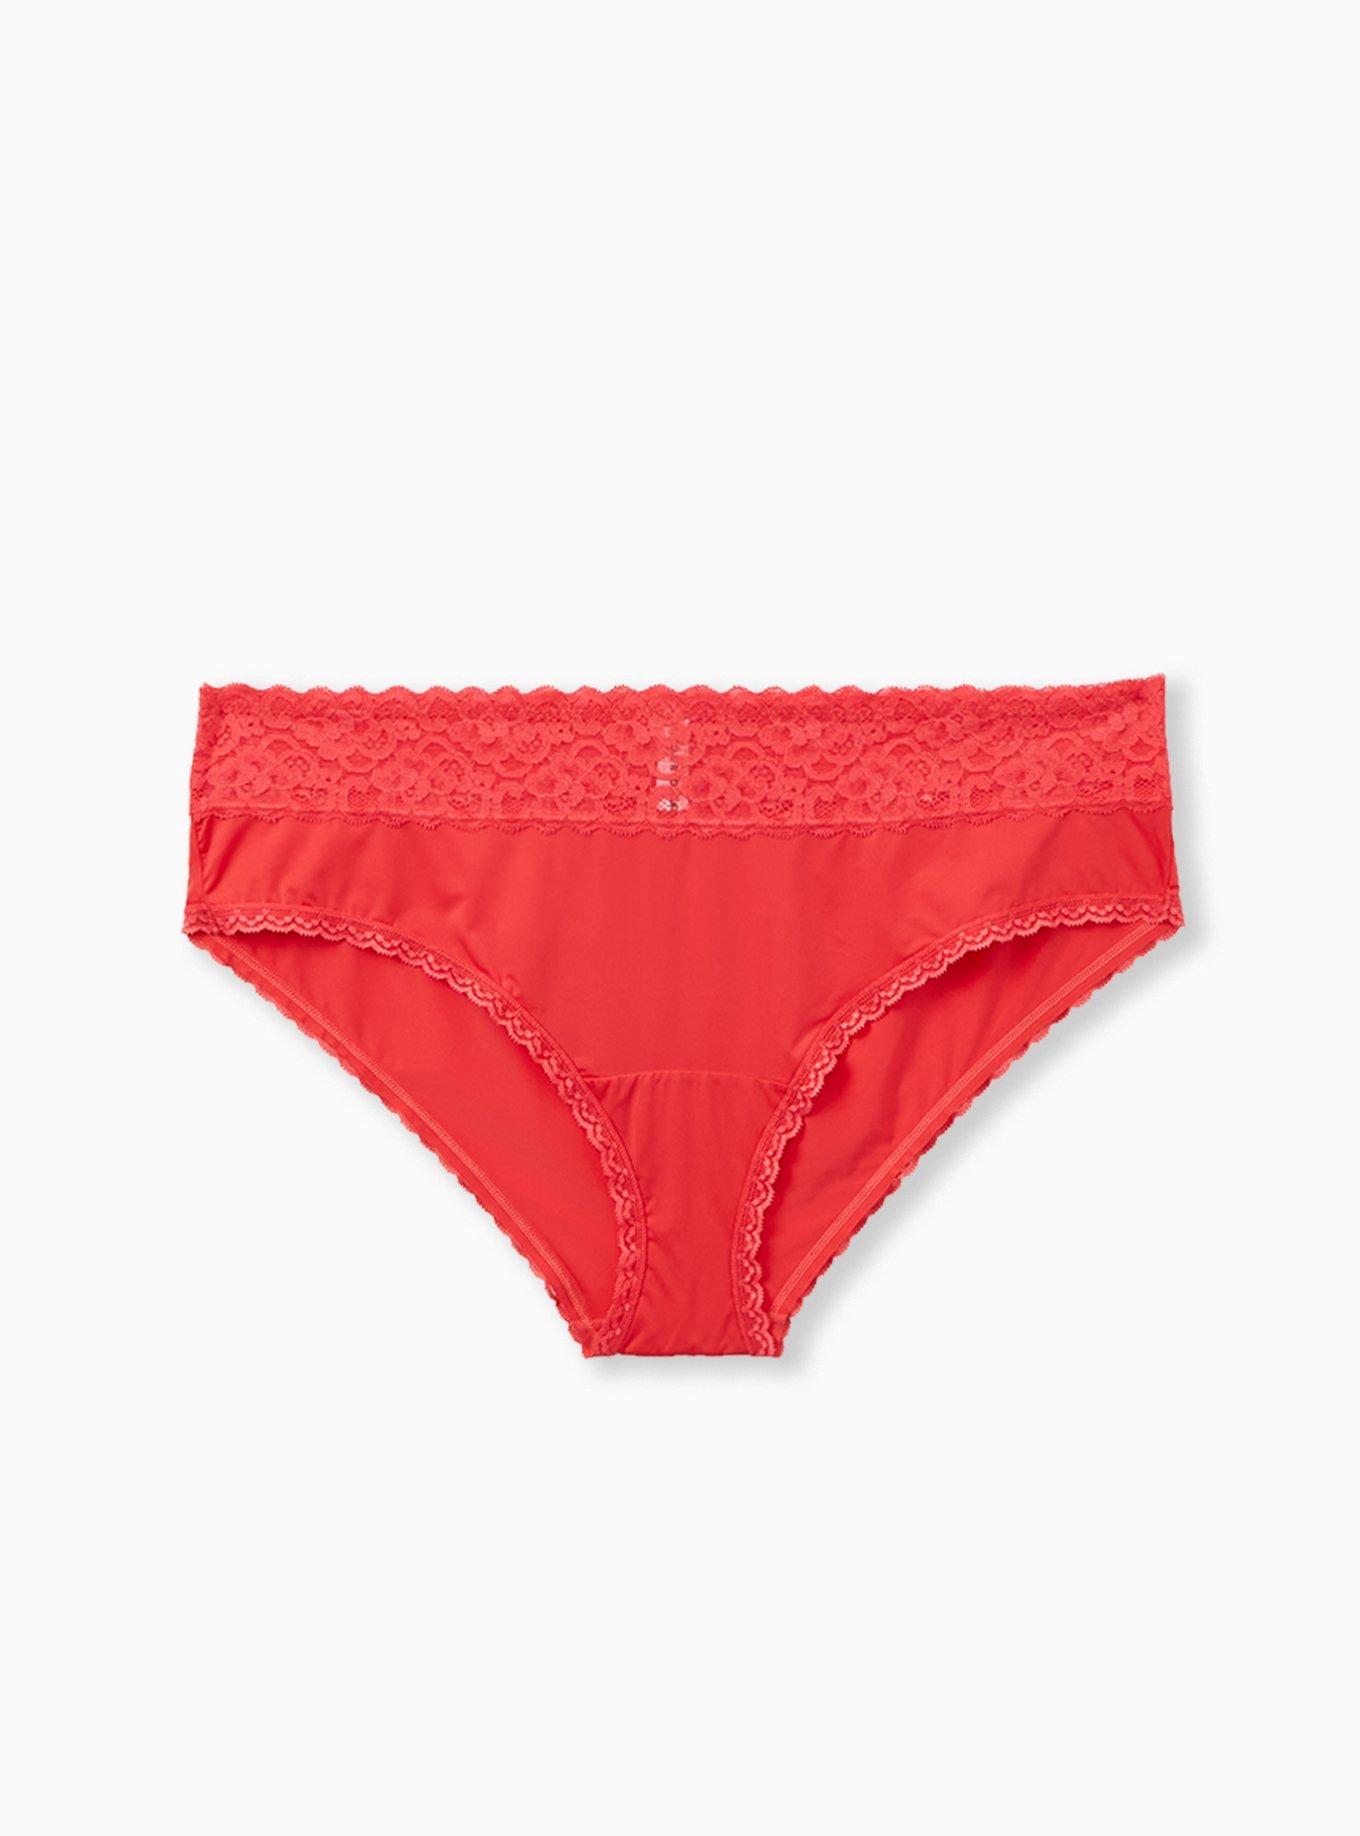 Torrid Hipster Panties Black Floral 💛 Pink Lace Ladies Plus Underwear NWT 2  2x